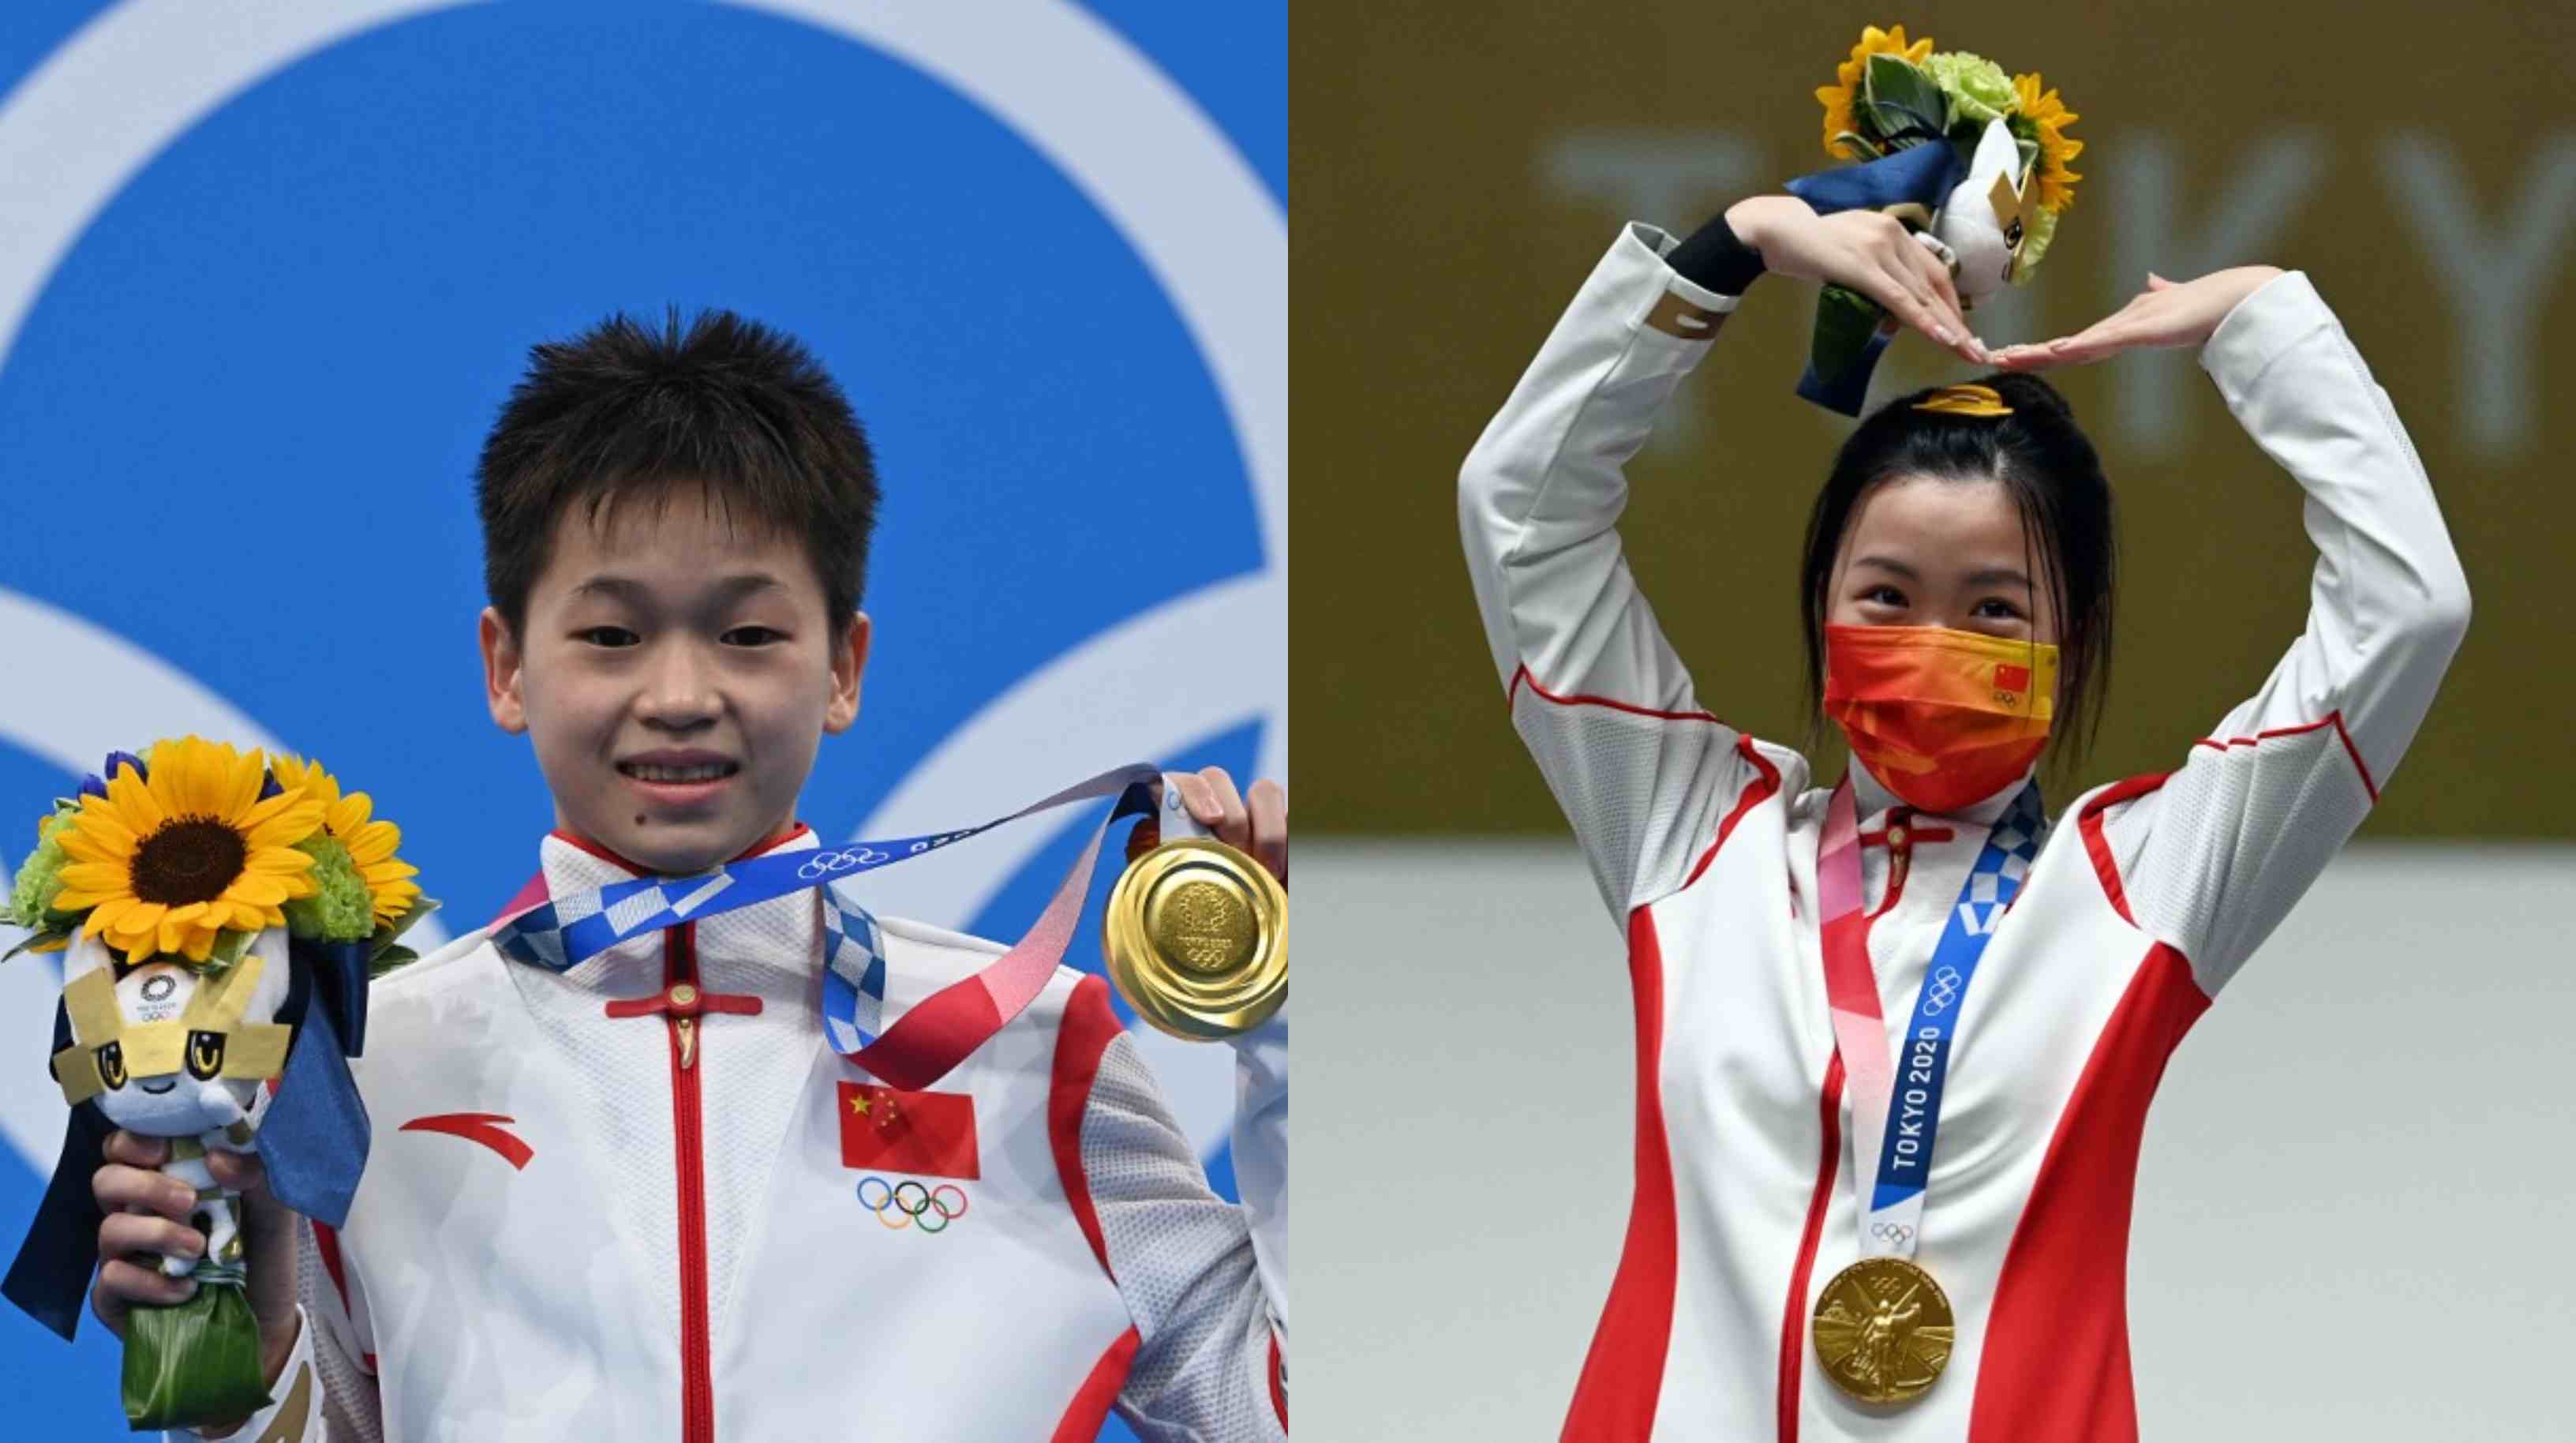 全红婵（左）表示她在奥运会结束后想去游乐园抓娃娃，有网民叫她记得带上杨倩姐姐，杨倩也因此回应：”来吧，组个团“。

